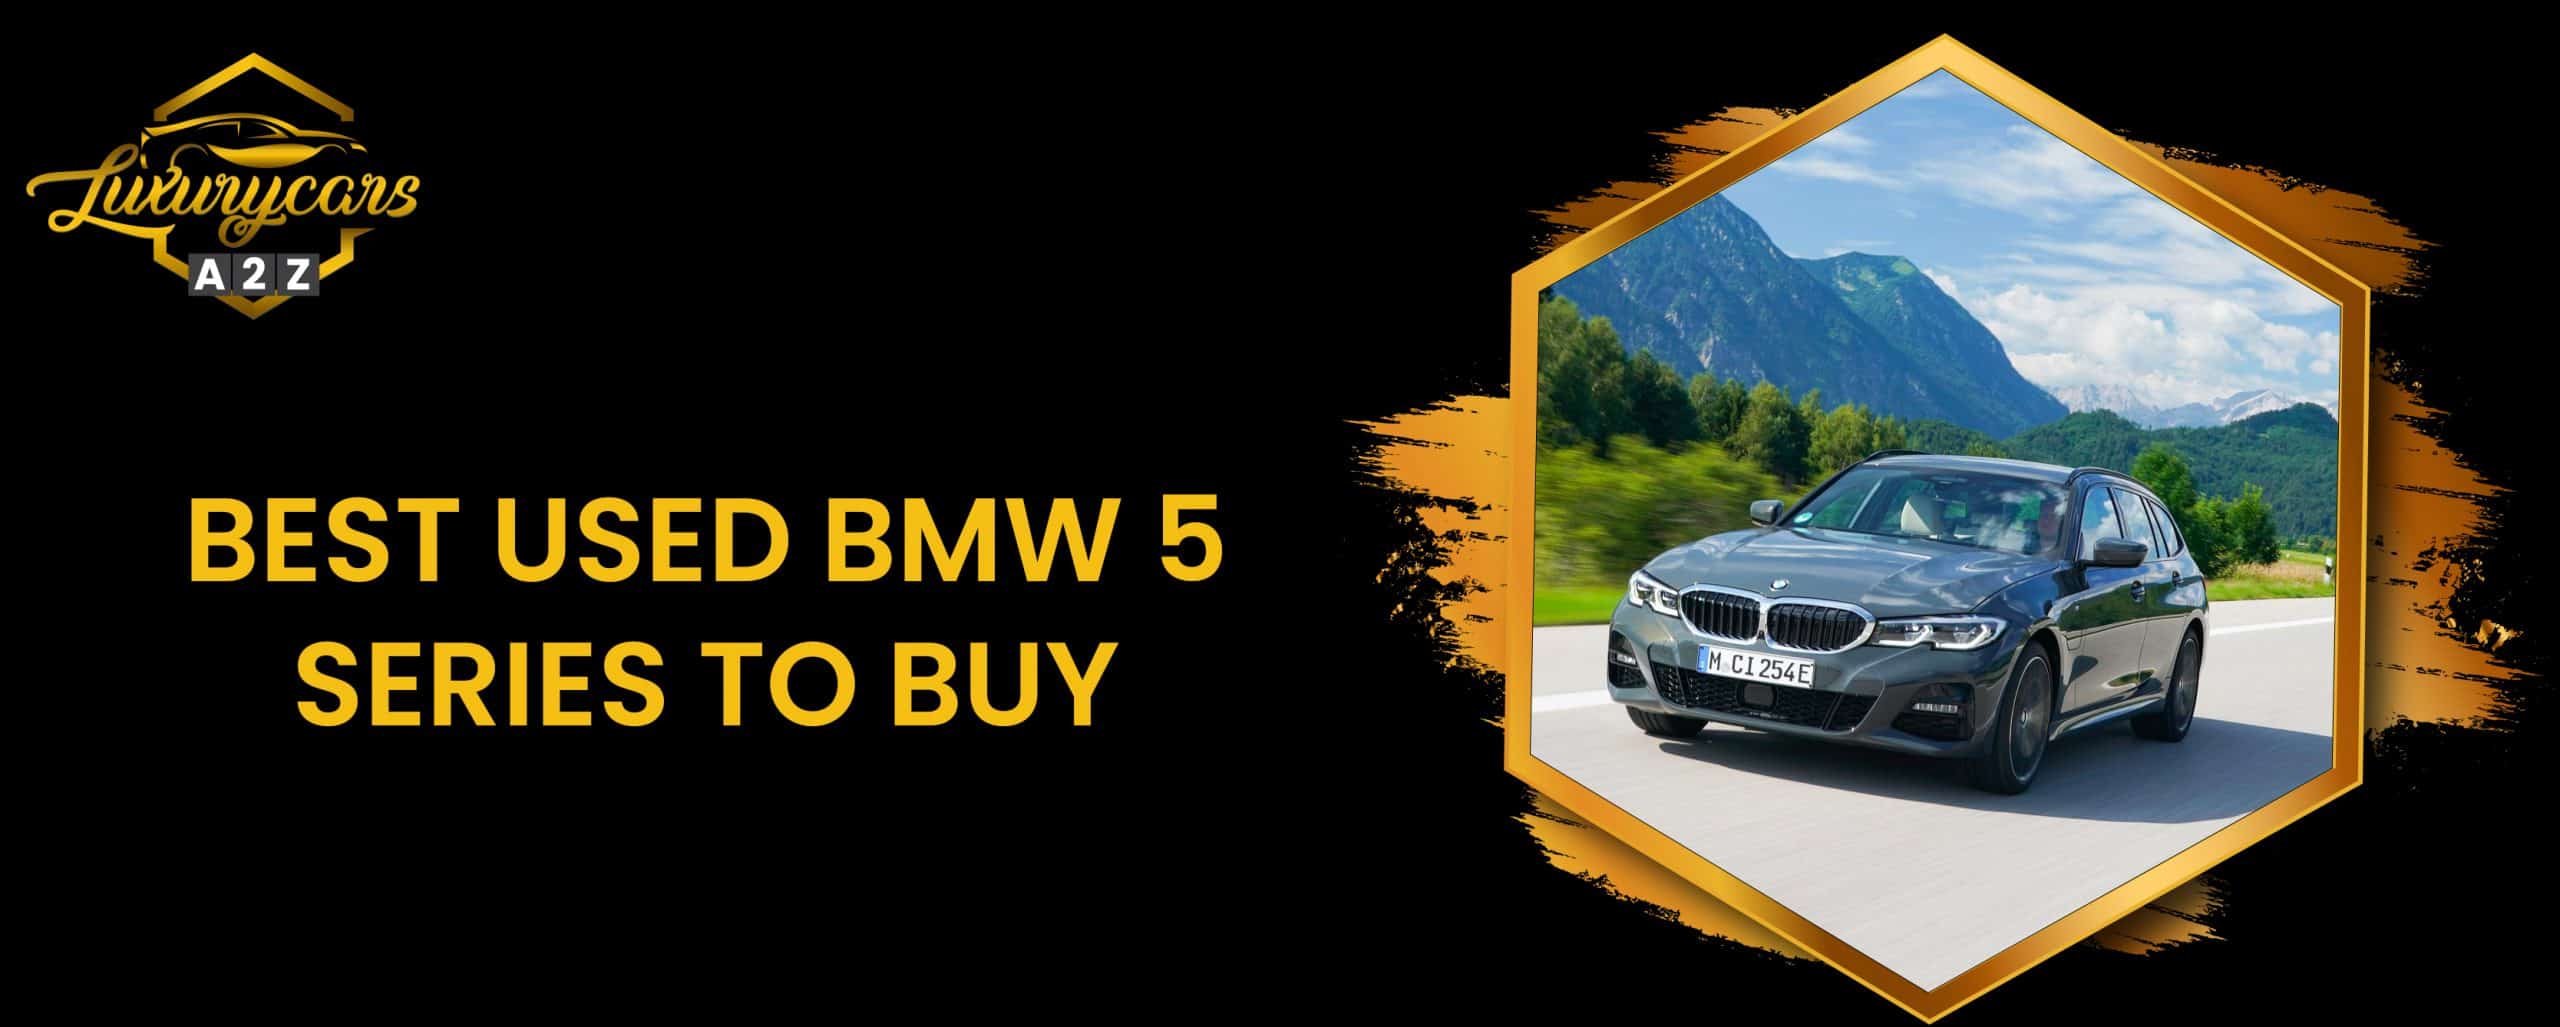 Meilleure BMW Série 5 d'occasion à acheter